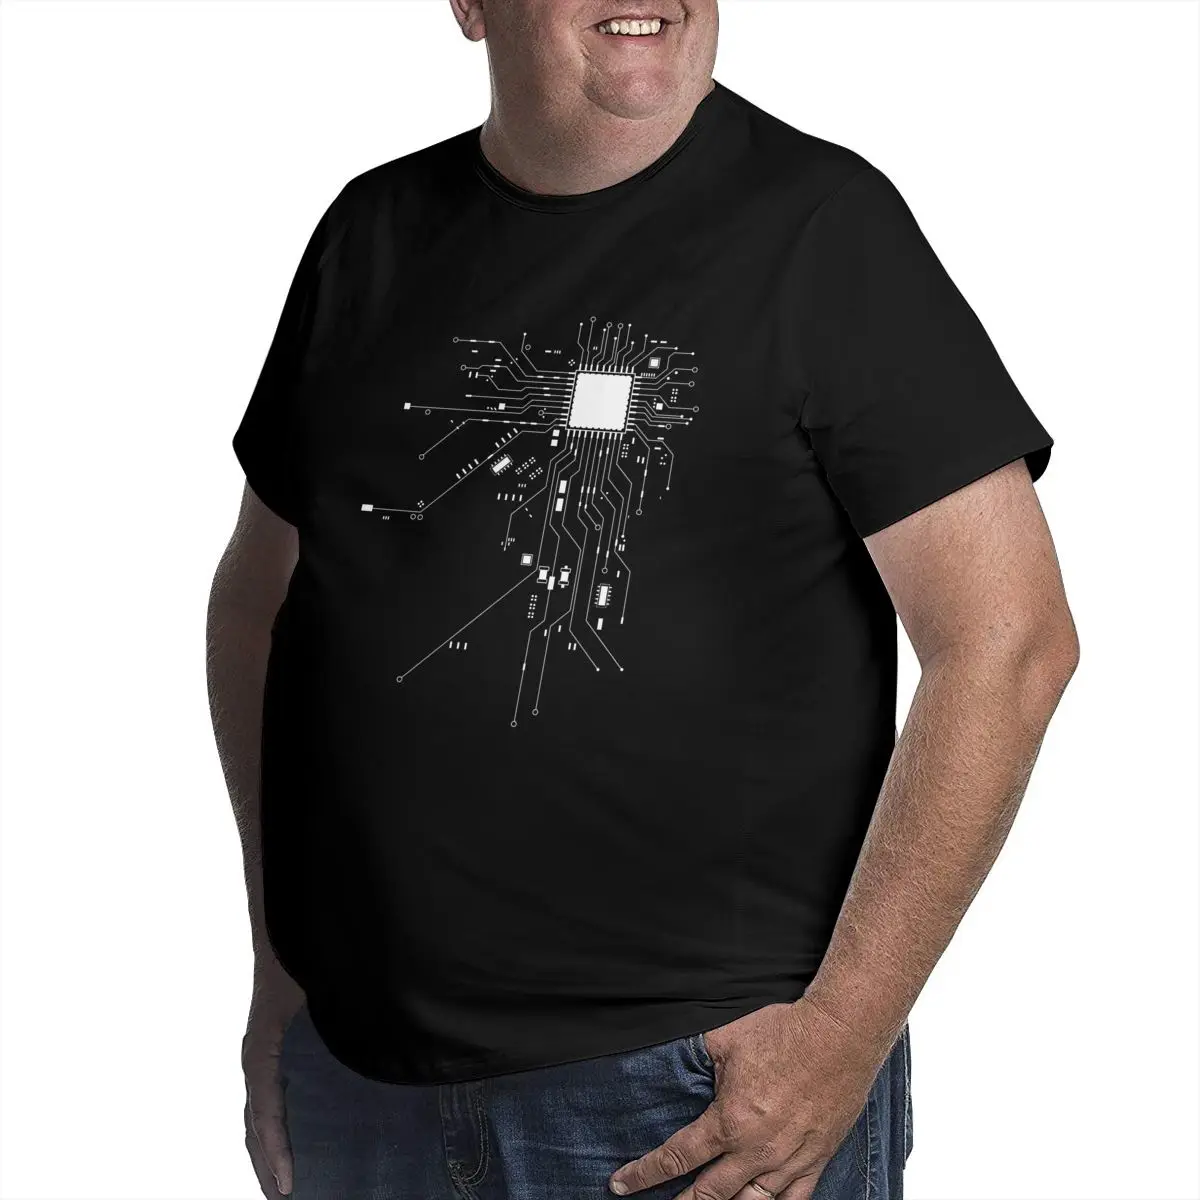 Мужская футболка с рисунком компьютерного процессора Core Heart Geek футболки ботана